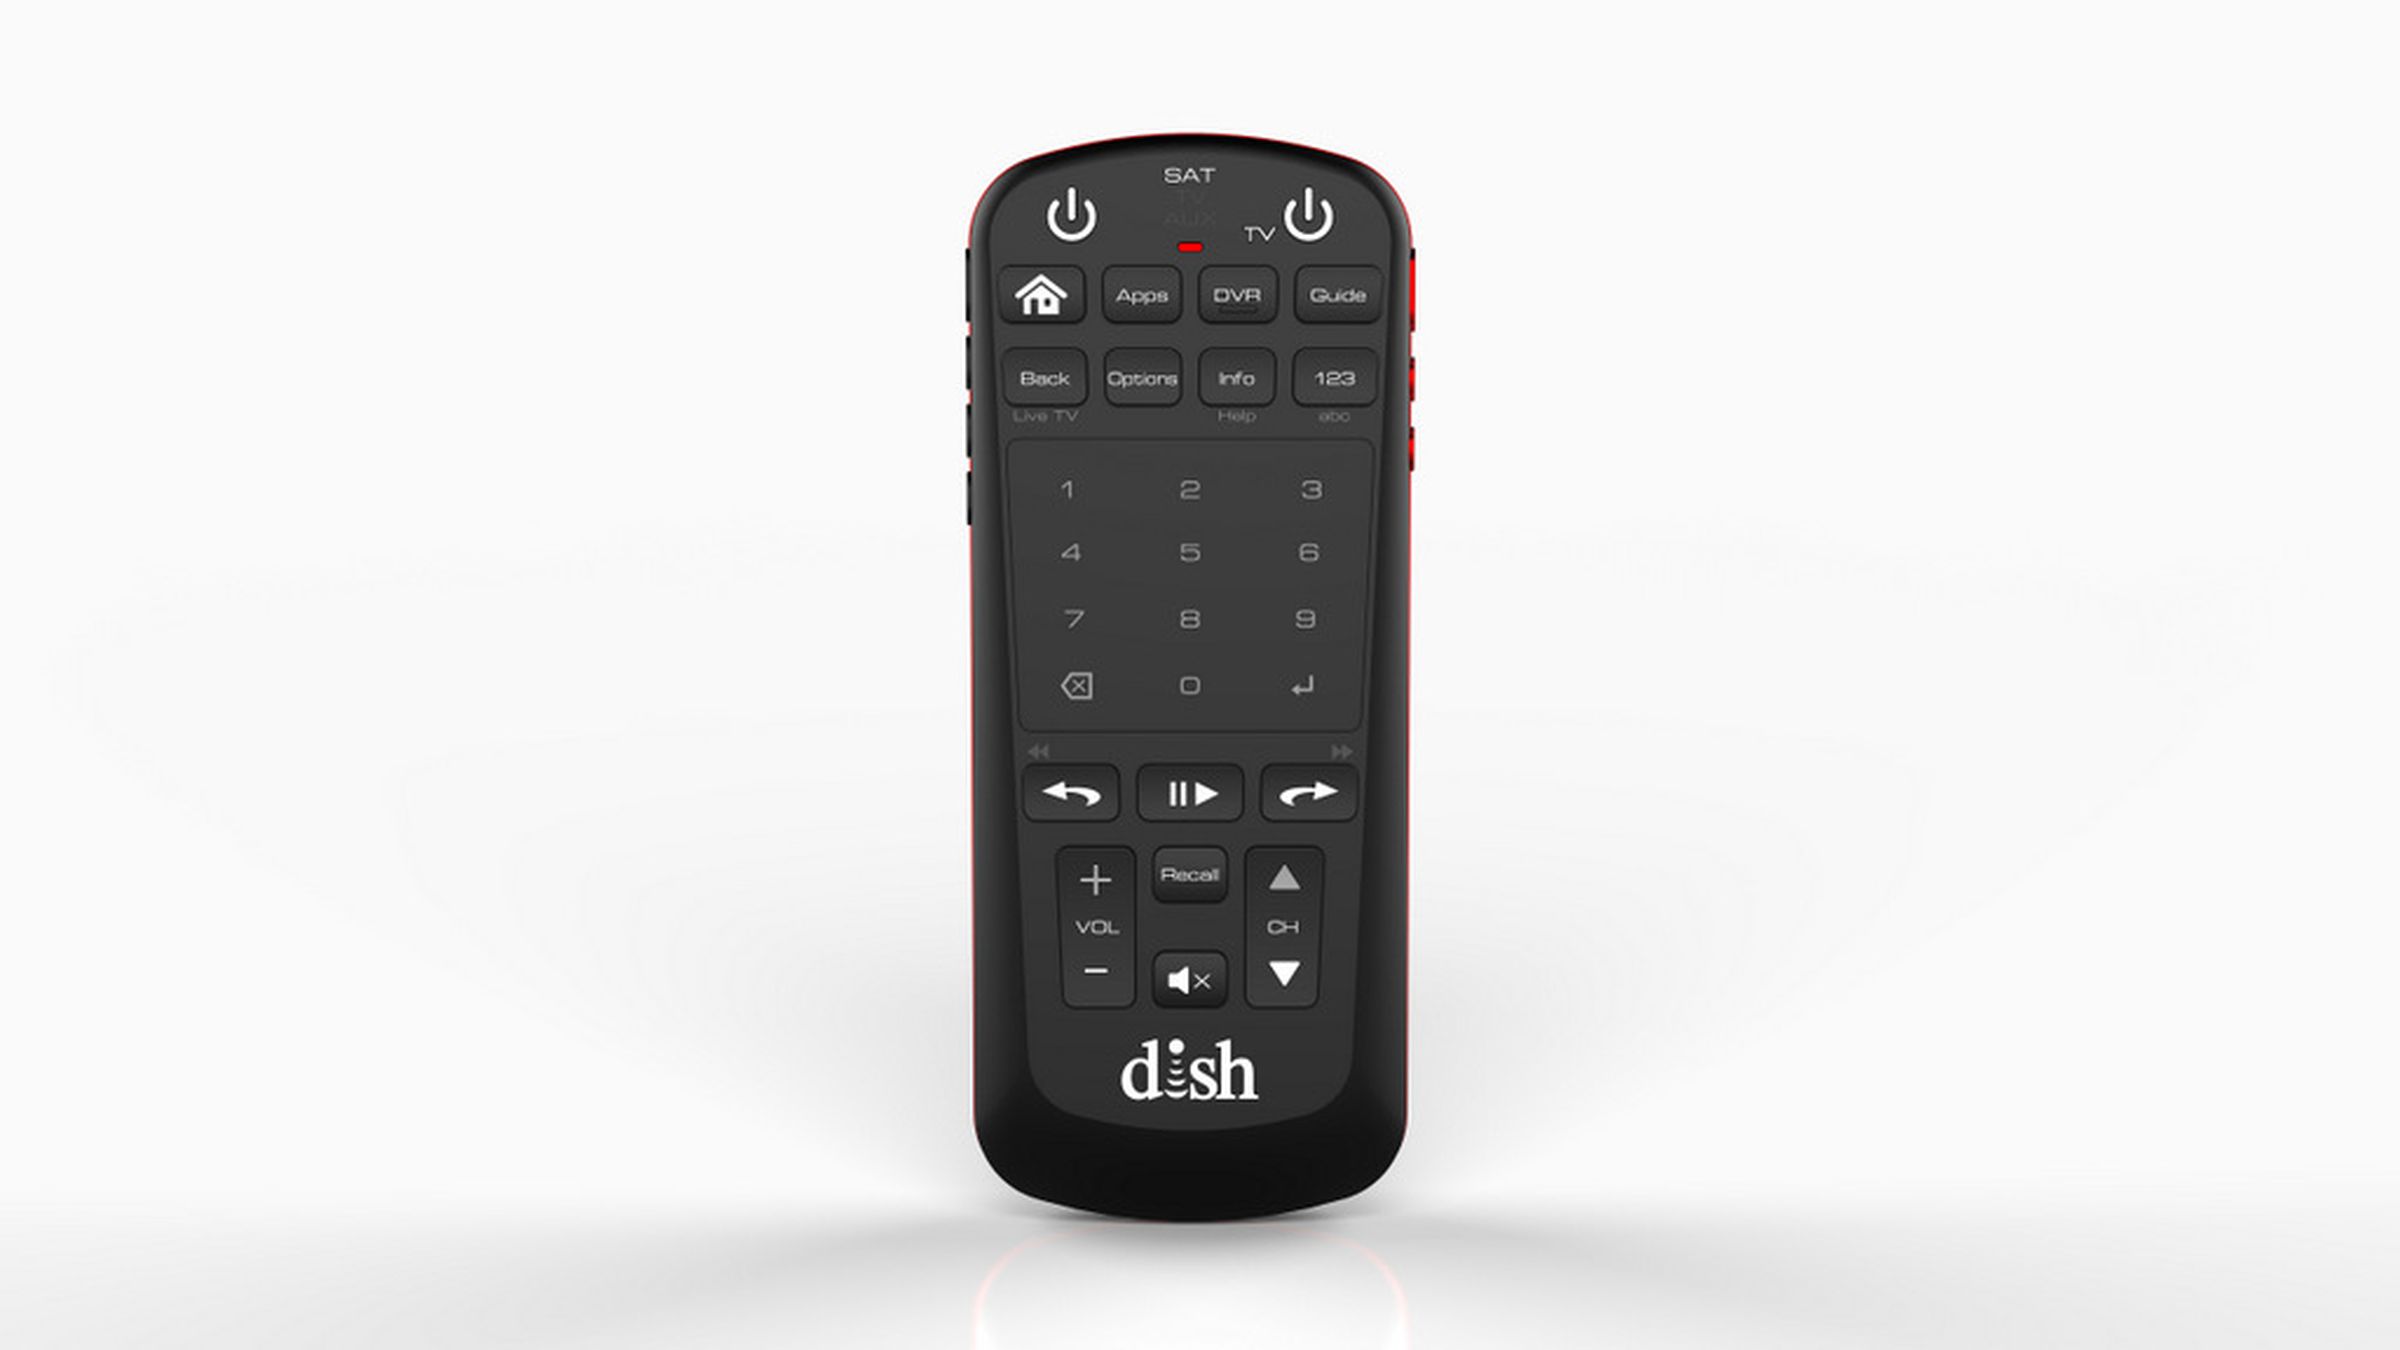 New Dish voice remote